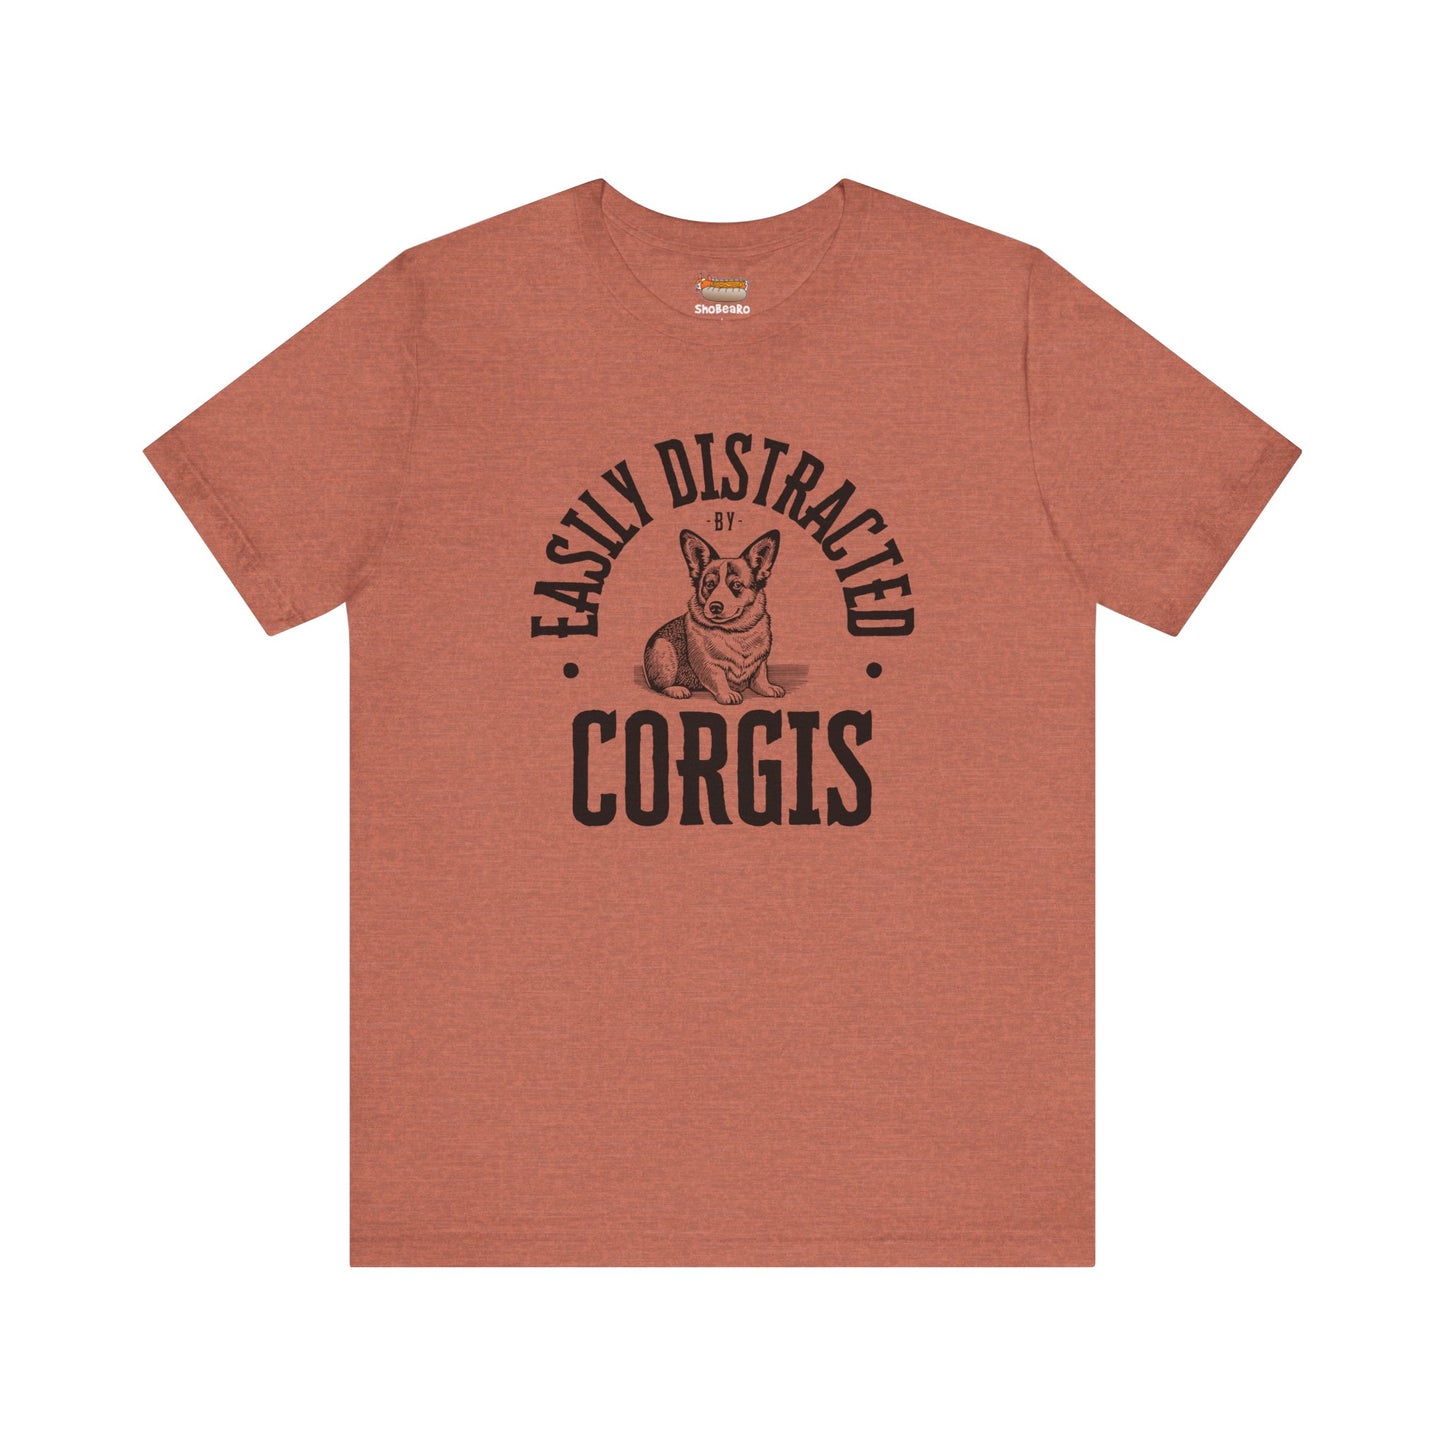 earth clay orange corgi t-shirt easily distracted women men shirt